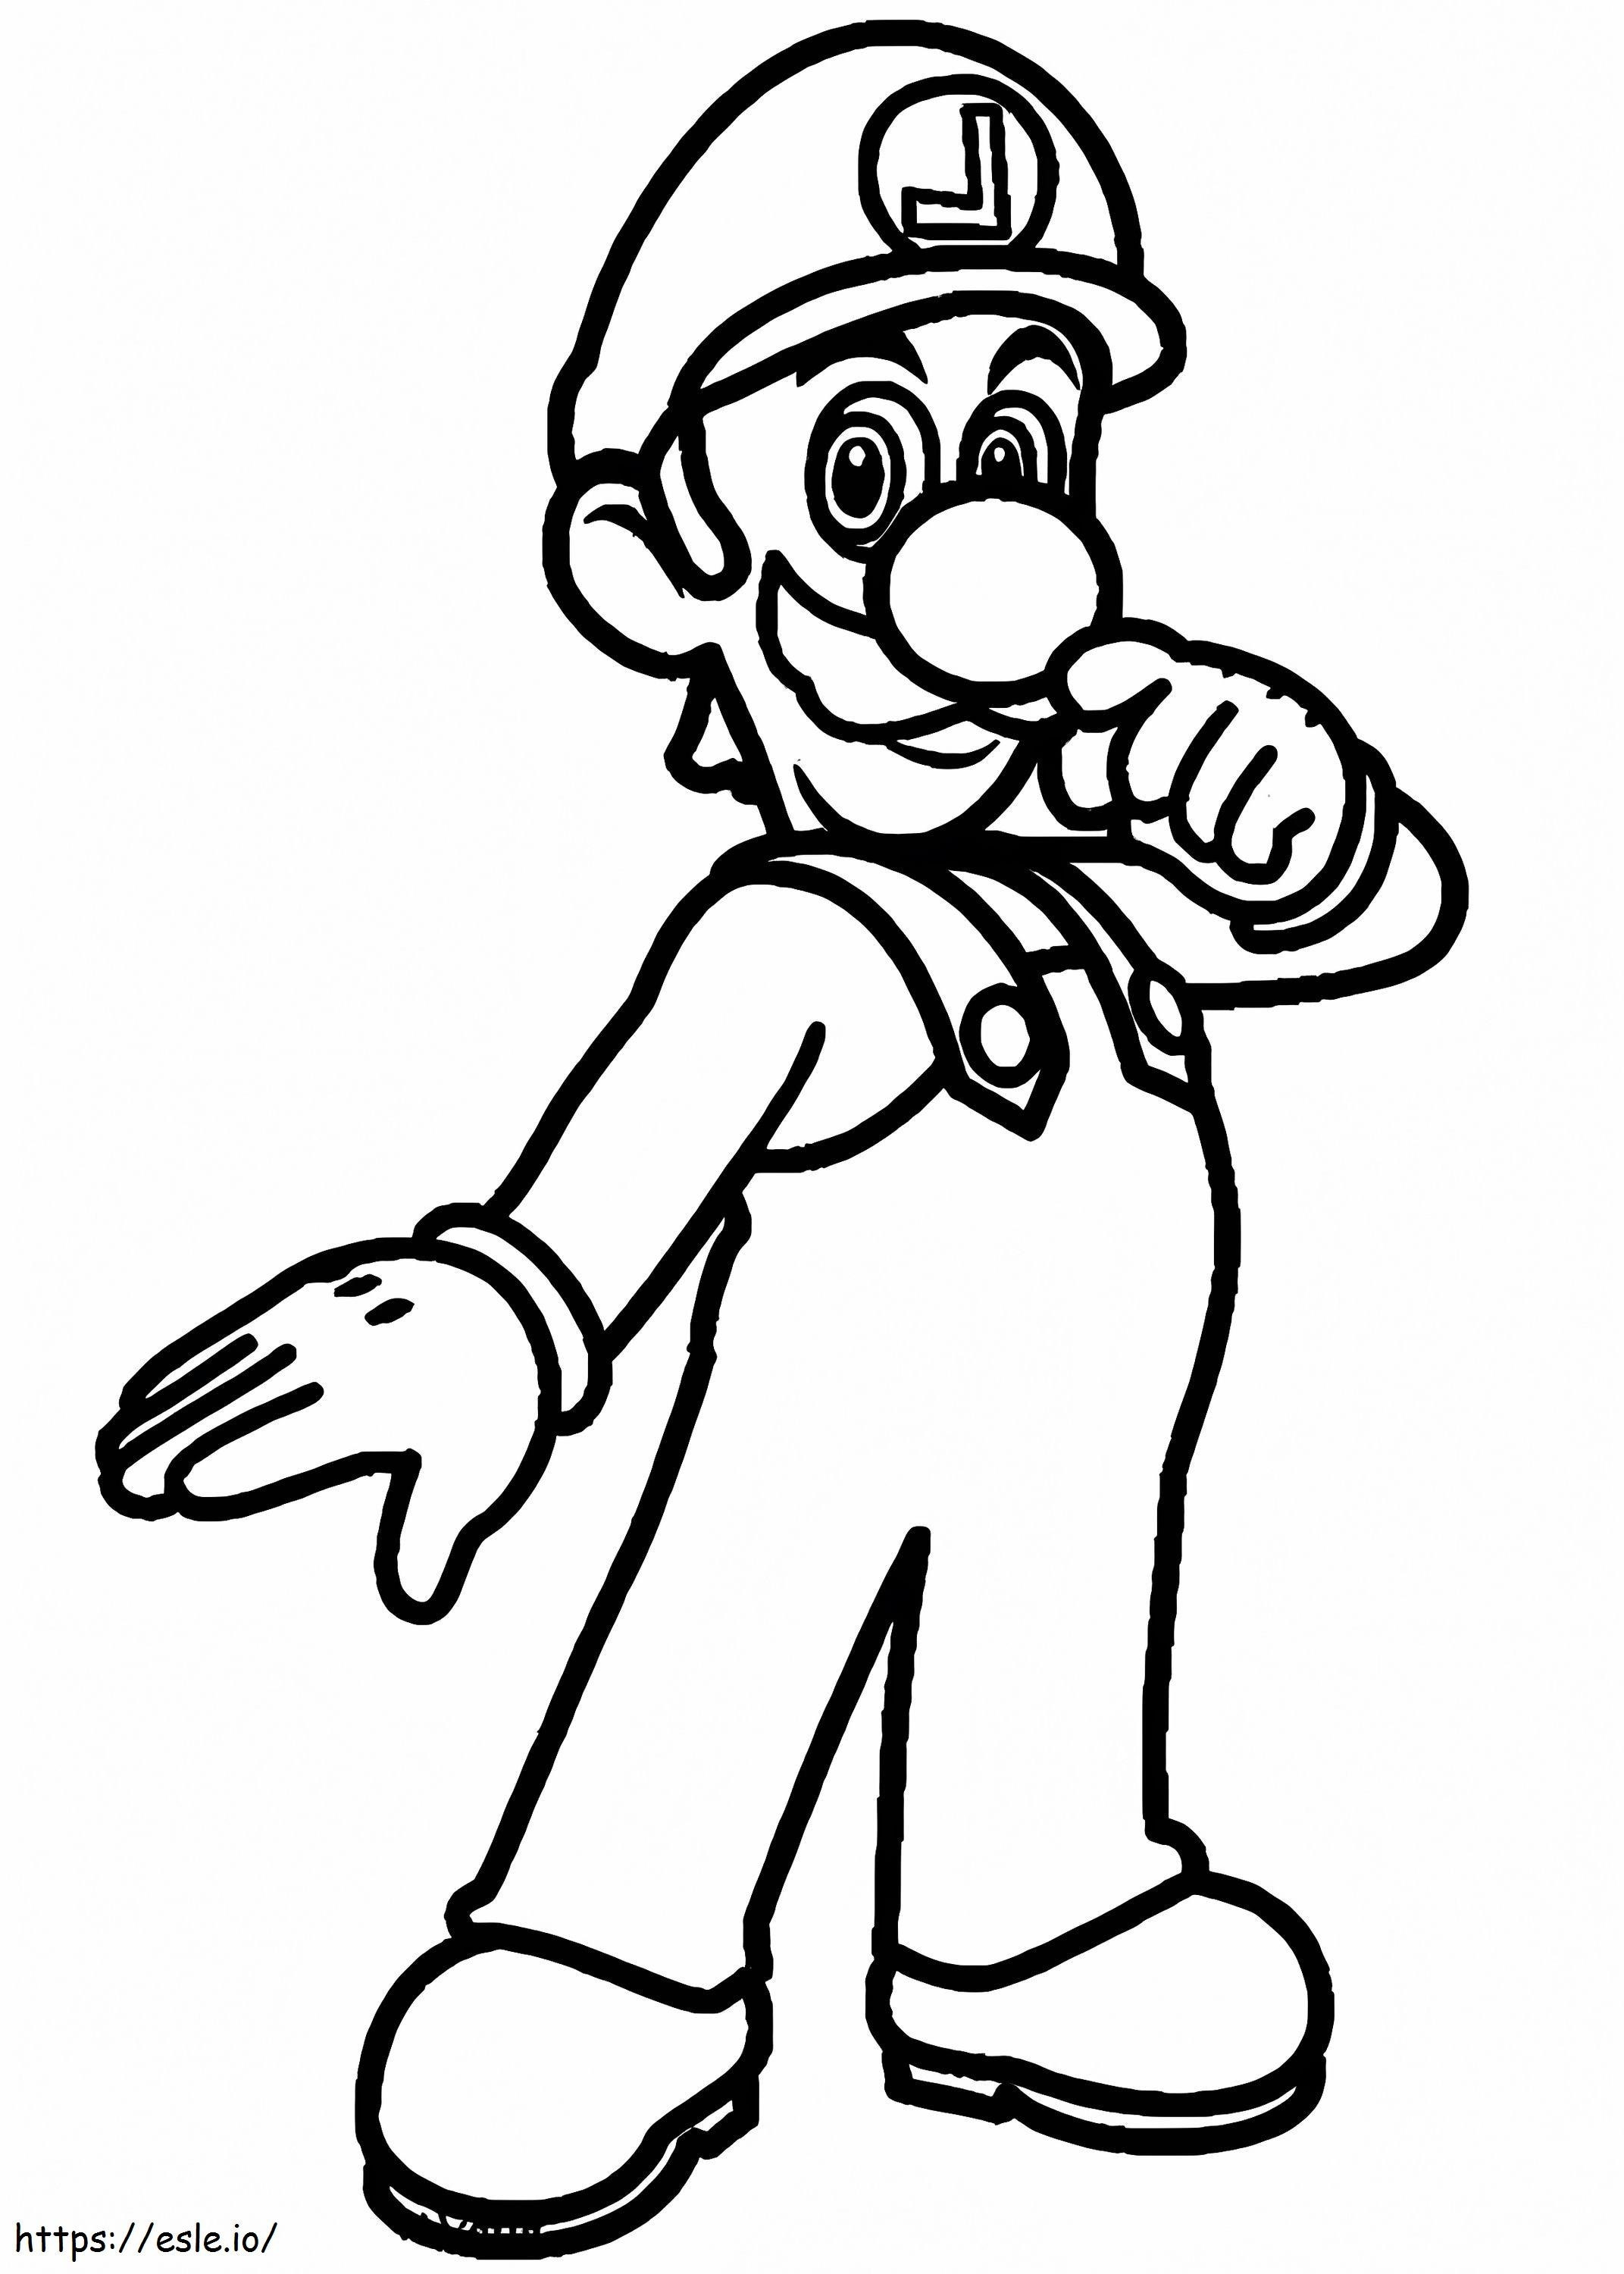 Luigi De Super Mario 3 kolorowanka